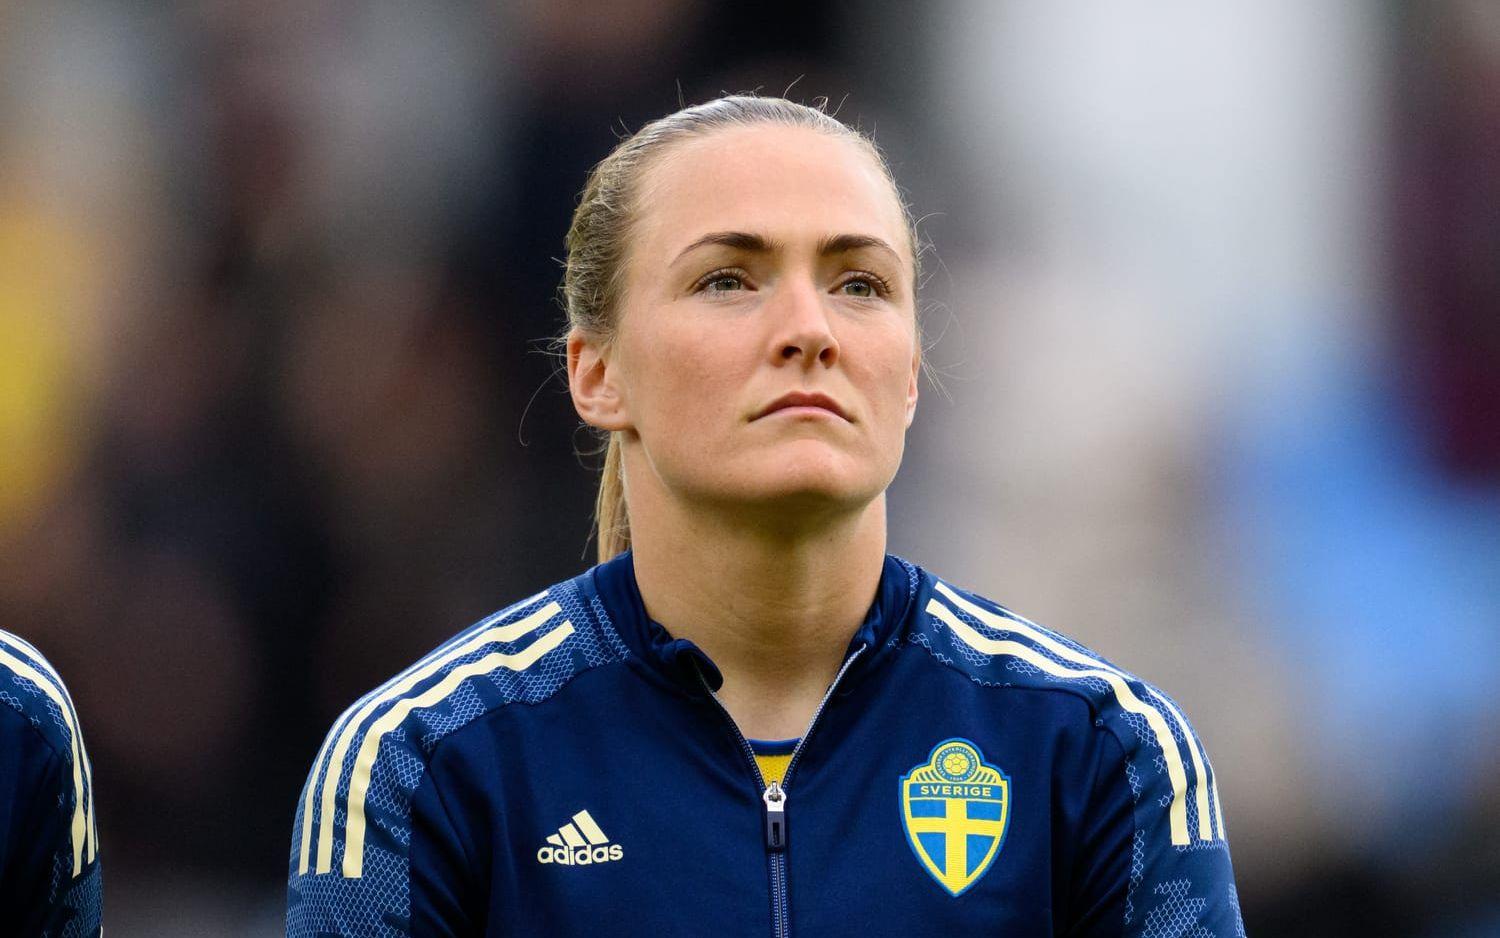 Den svenska landslagsstjärnan flyttar vidare efter sex år i klubben. 